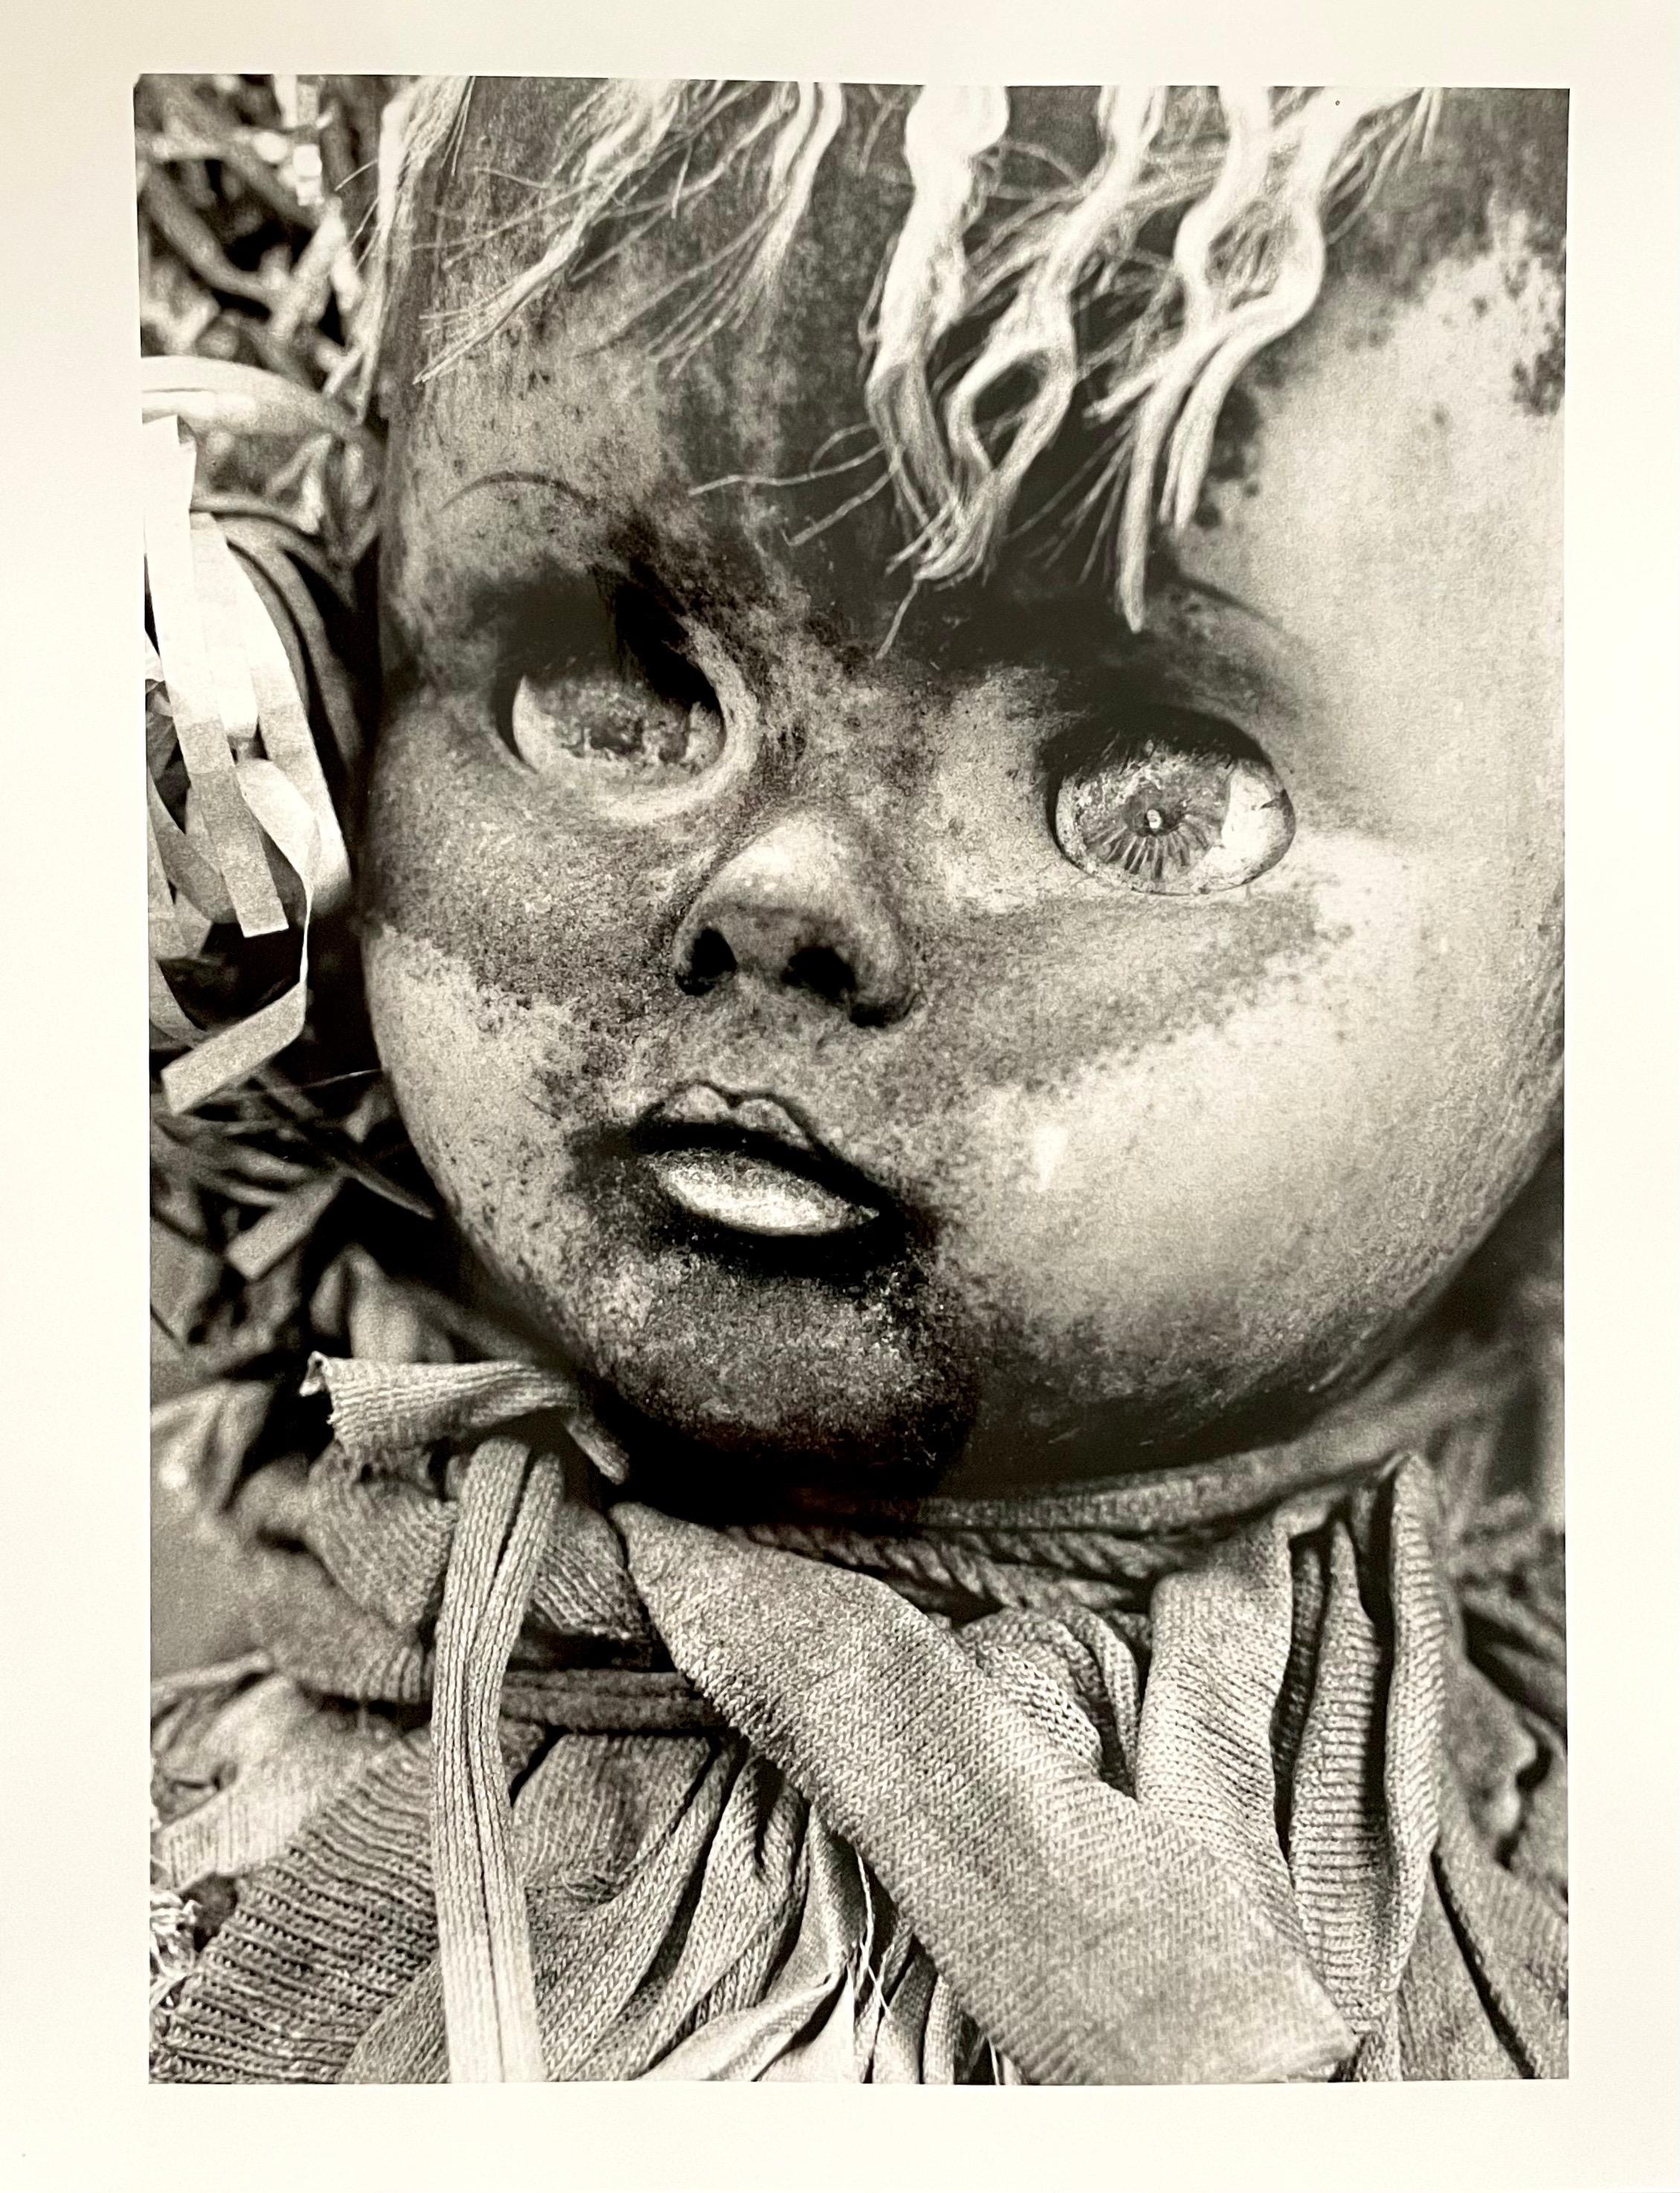 Ces photos proviennent d'une exposition de ses œuvres. Influencé par le surréalisme et les photographies DADA 
Il s'agit d'images de vieilles poupées d'enfants dans différents états de décomposition. Elles sont influencées par Hans Bellmer, Dora